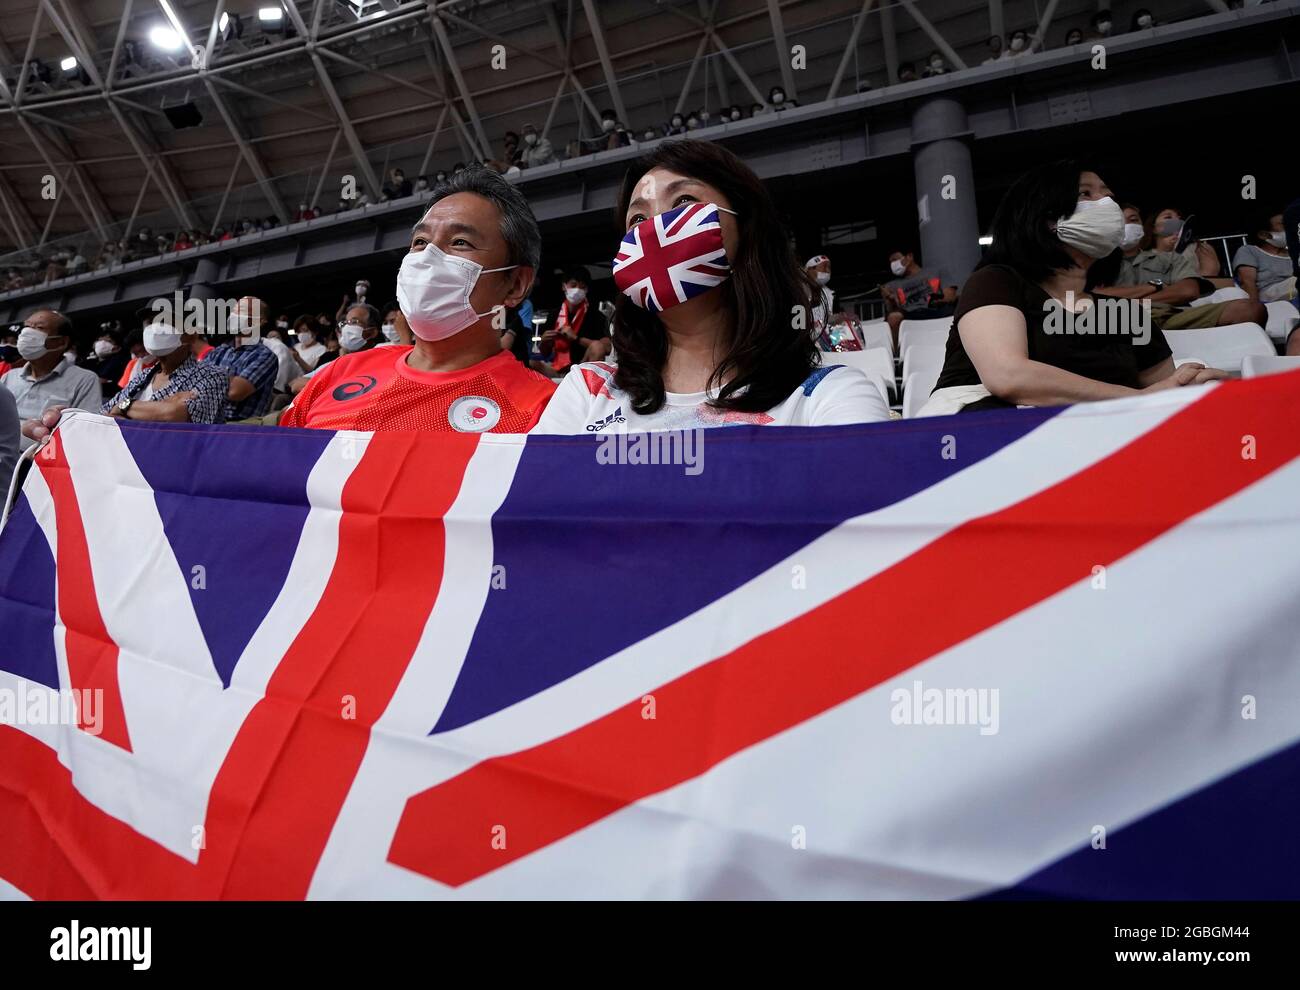 Les fans de Grande-Bretagne dans les stands regardent l'action pendant le cyclisme sur piste à l'Izu Velodrome le douzième jour des Jeux Olympiques de Tokyo 2020 au Japon. Date de la photo: Mercredi 4 août 2021. Banque D'Images